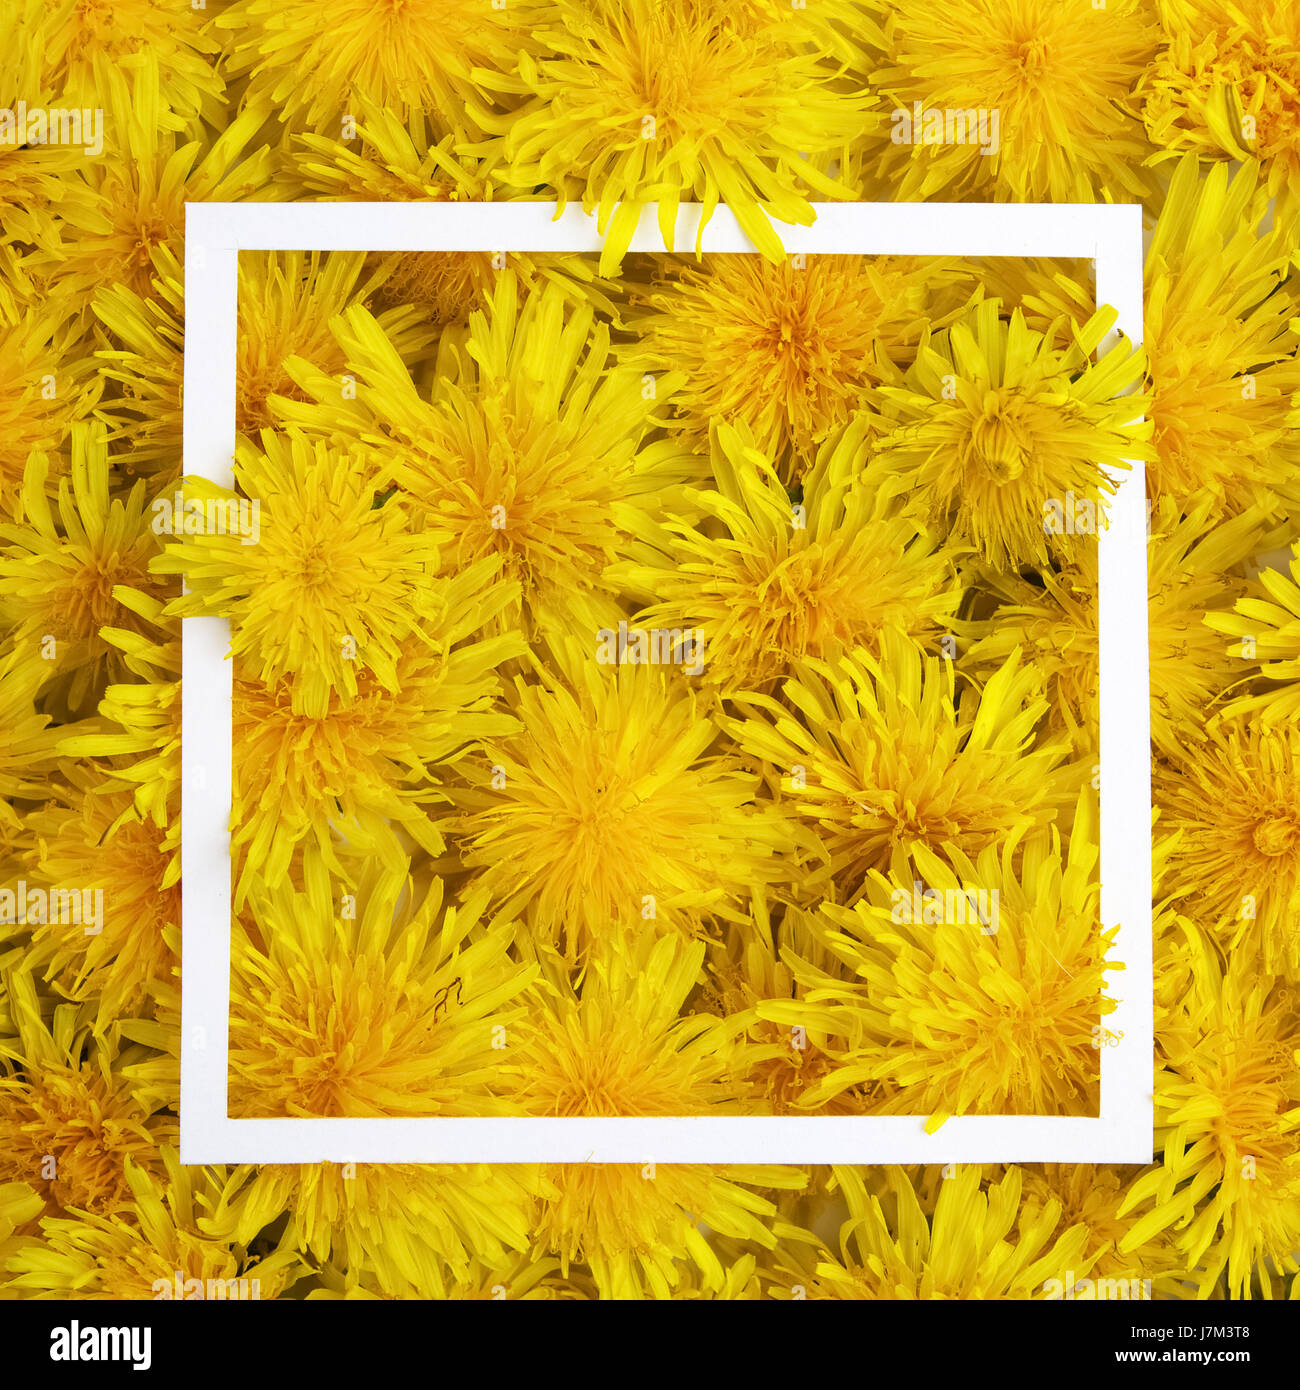 Weißer Rahmen auf gelben Blumen Hintergrund. Frühling, Sommer-Konzept. Flach legen, Top Aussicht Stockfoto